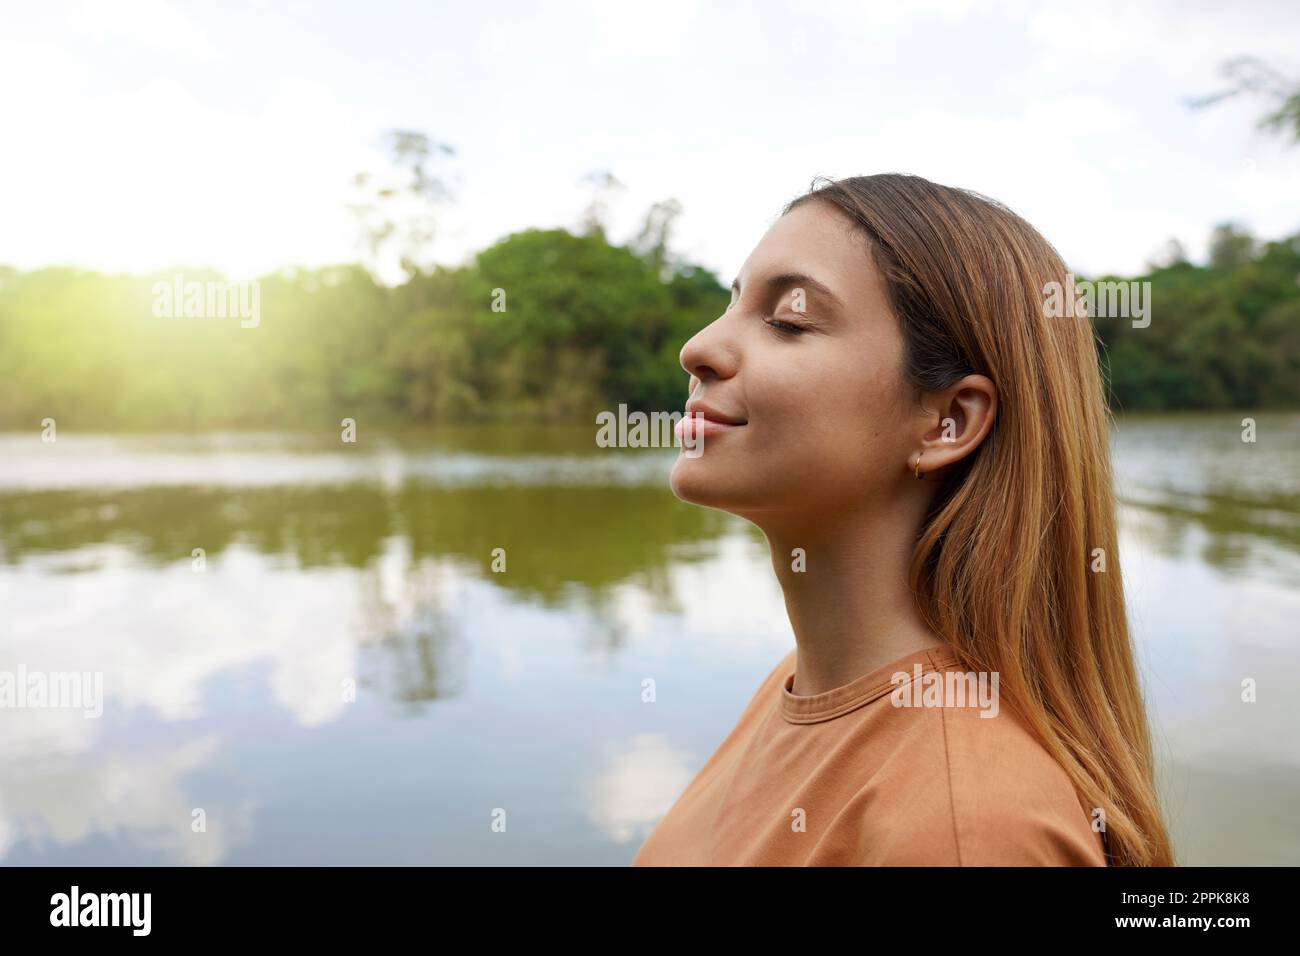 Verbinden Sie sich mit der Natur. Seitenansicht einer jungen Frau mit geschlossenen Augen, die im tropischen Park Brasiliens atmet. Stockfoto